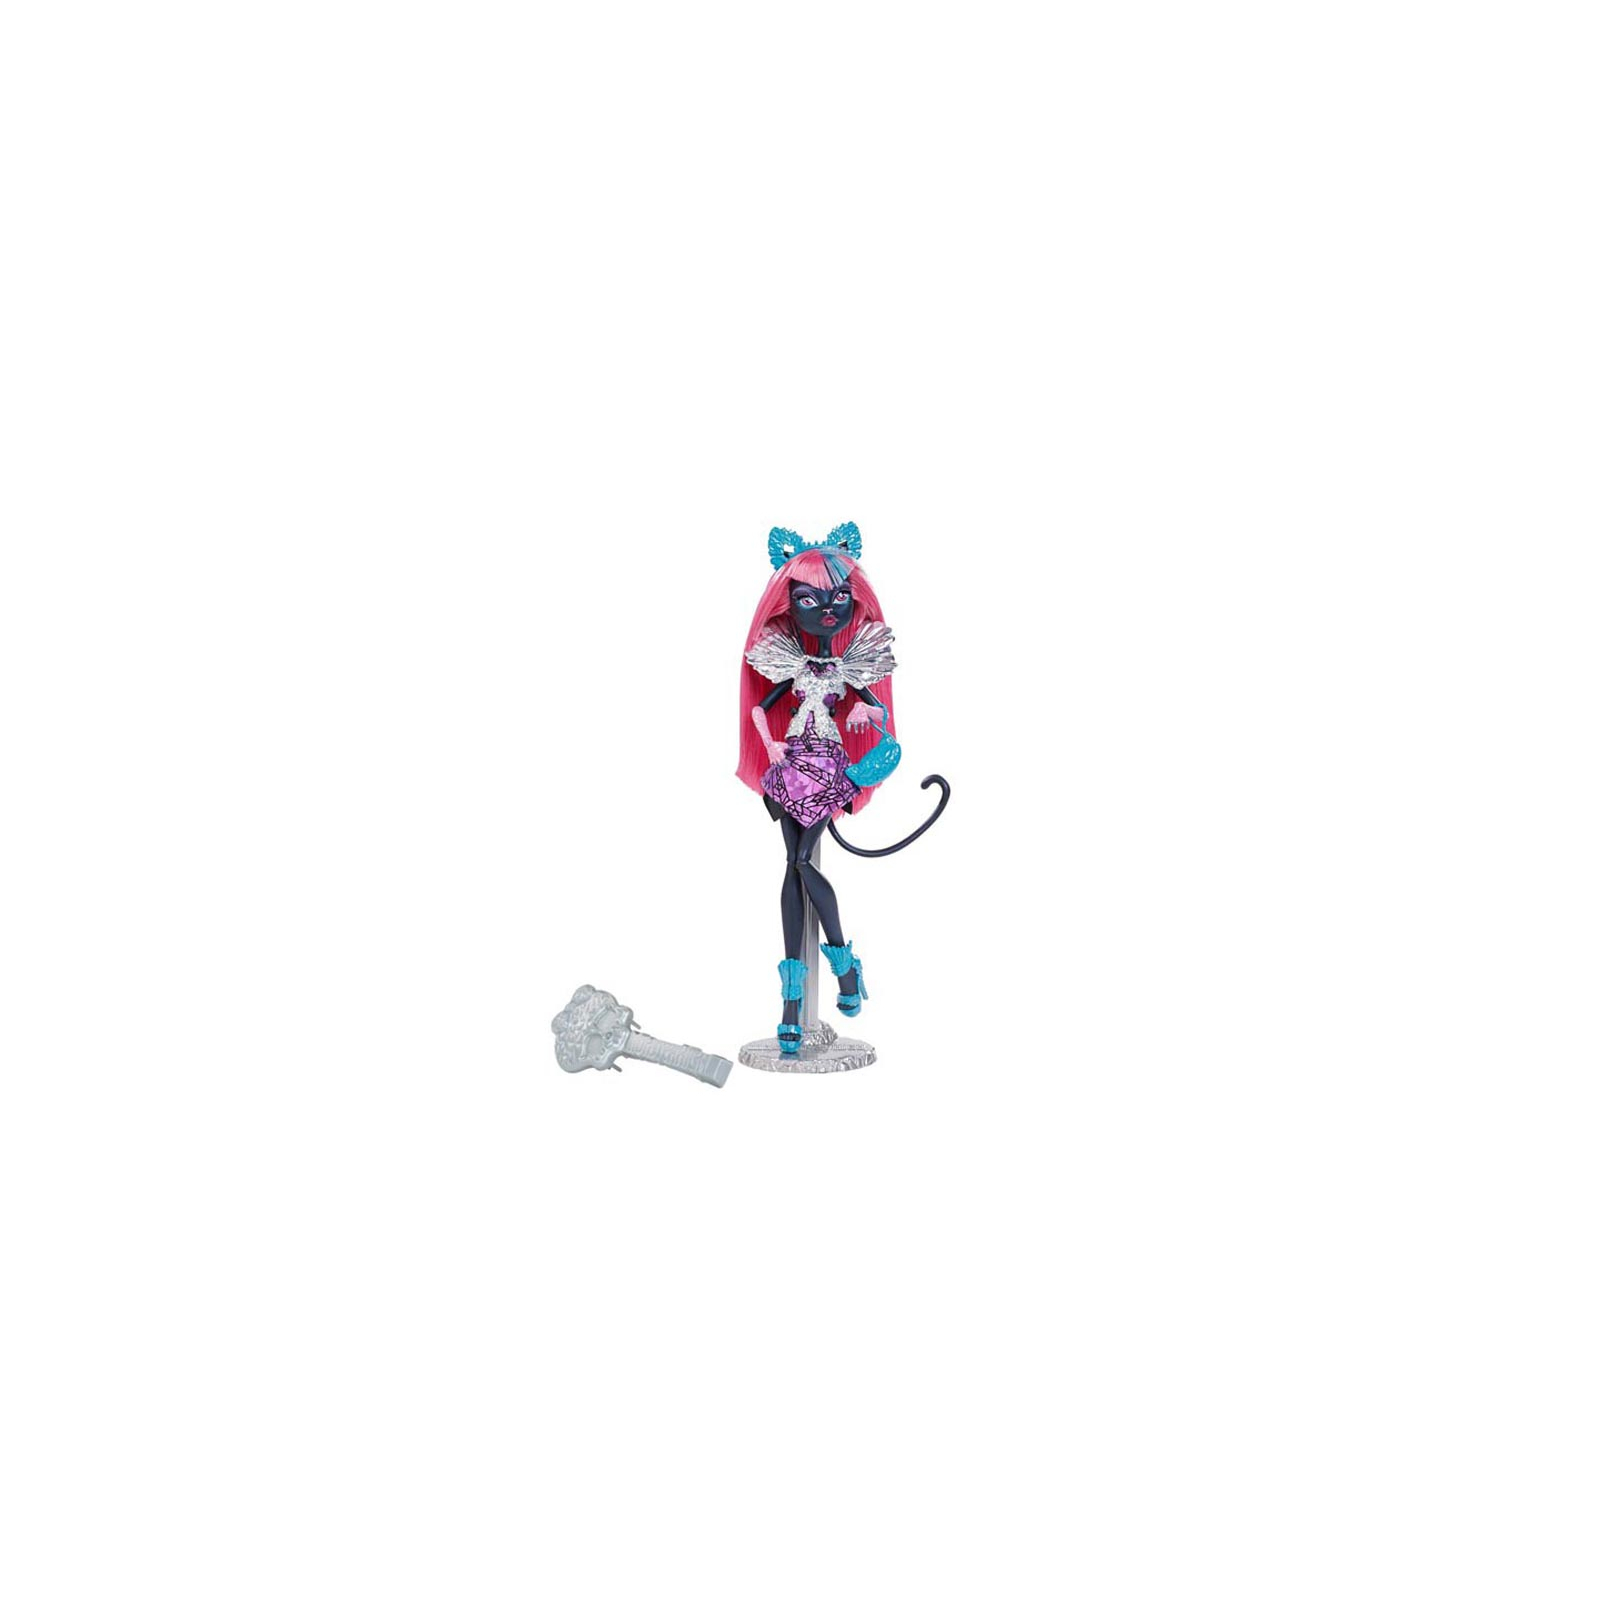 Кукла Monster High Кэтти Нуар серии Интриги большого города из м/ф Буу-Йорк (CJF30-1)